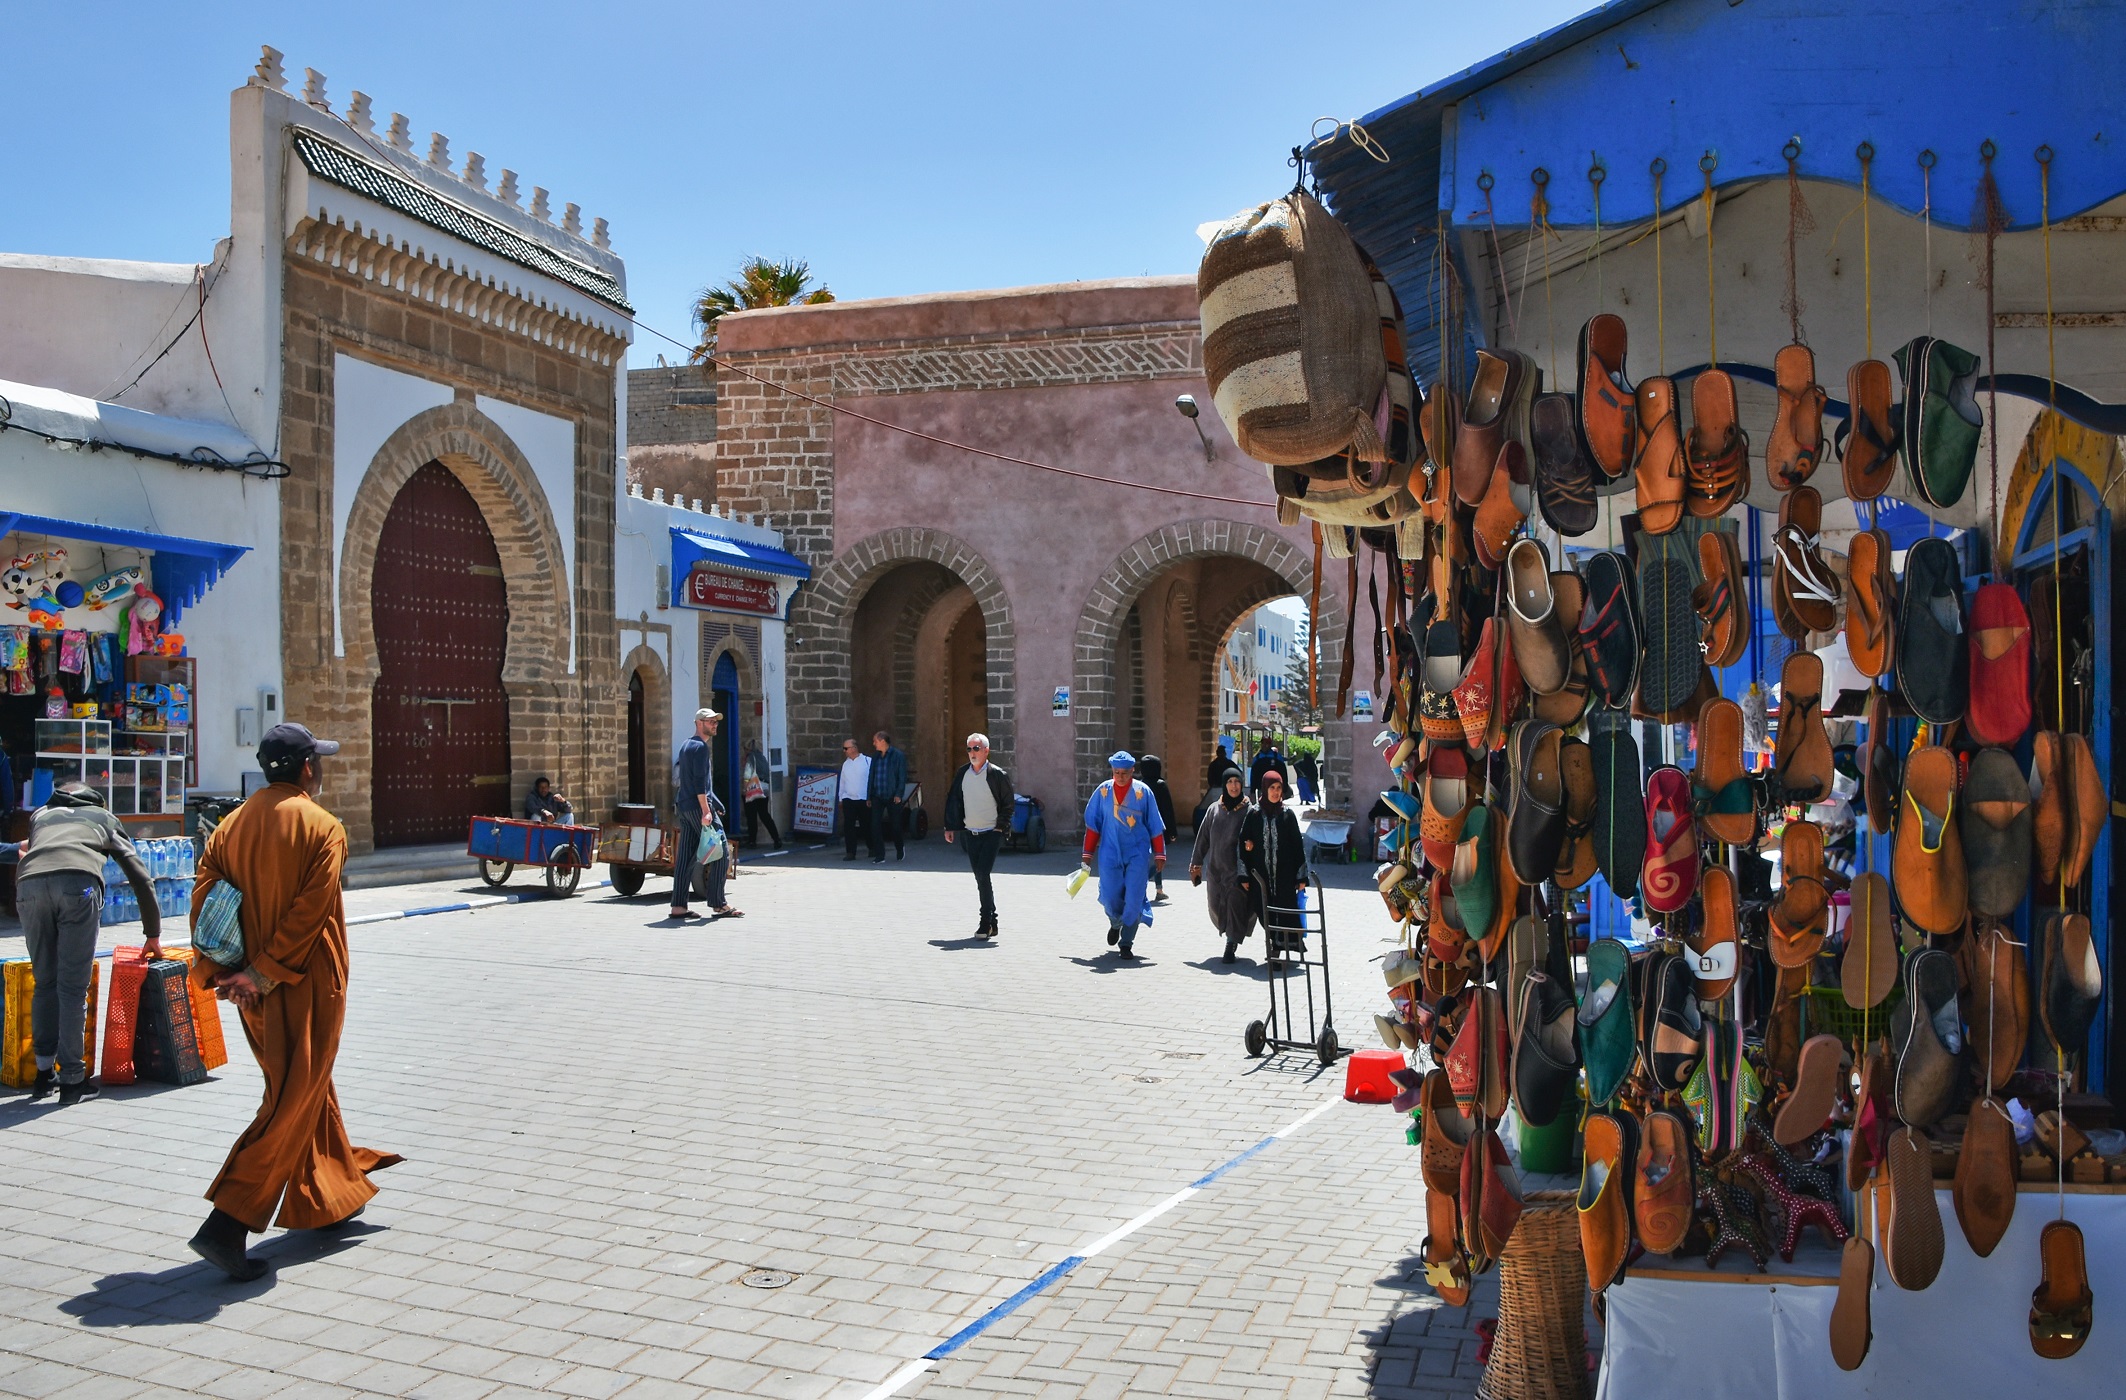 Day 02: Casablanca - Marrakech